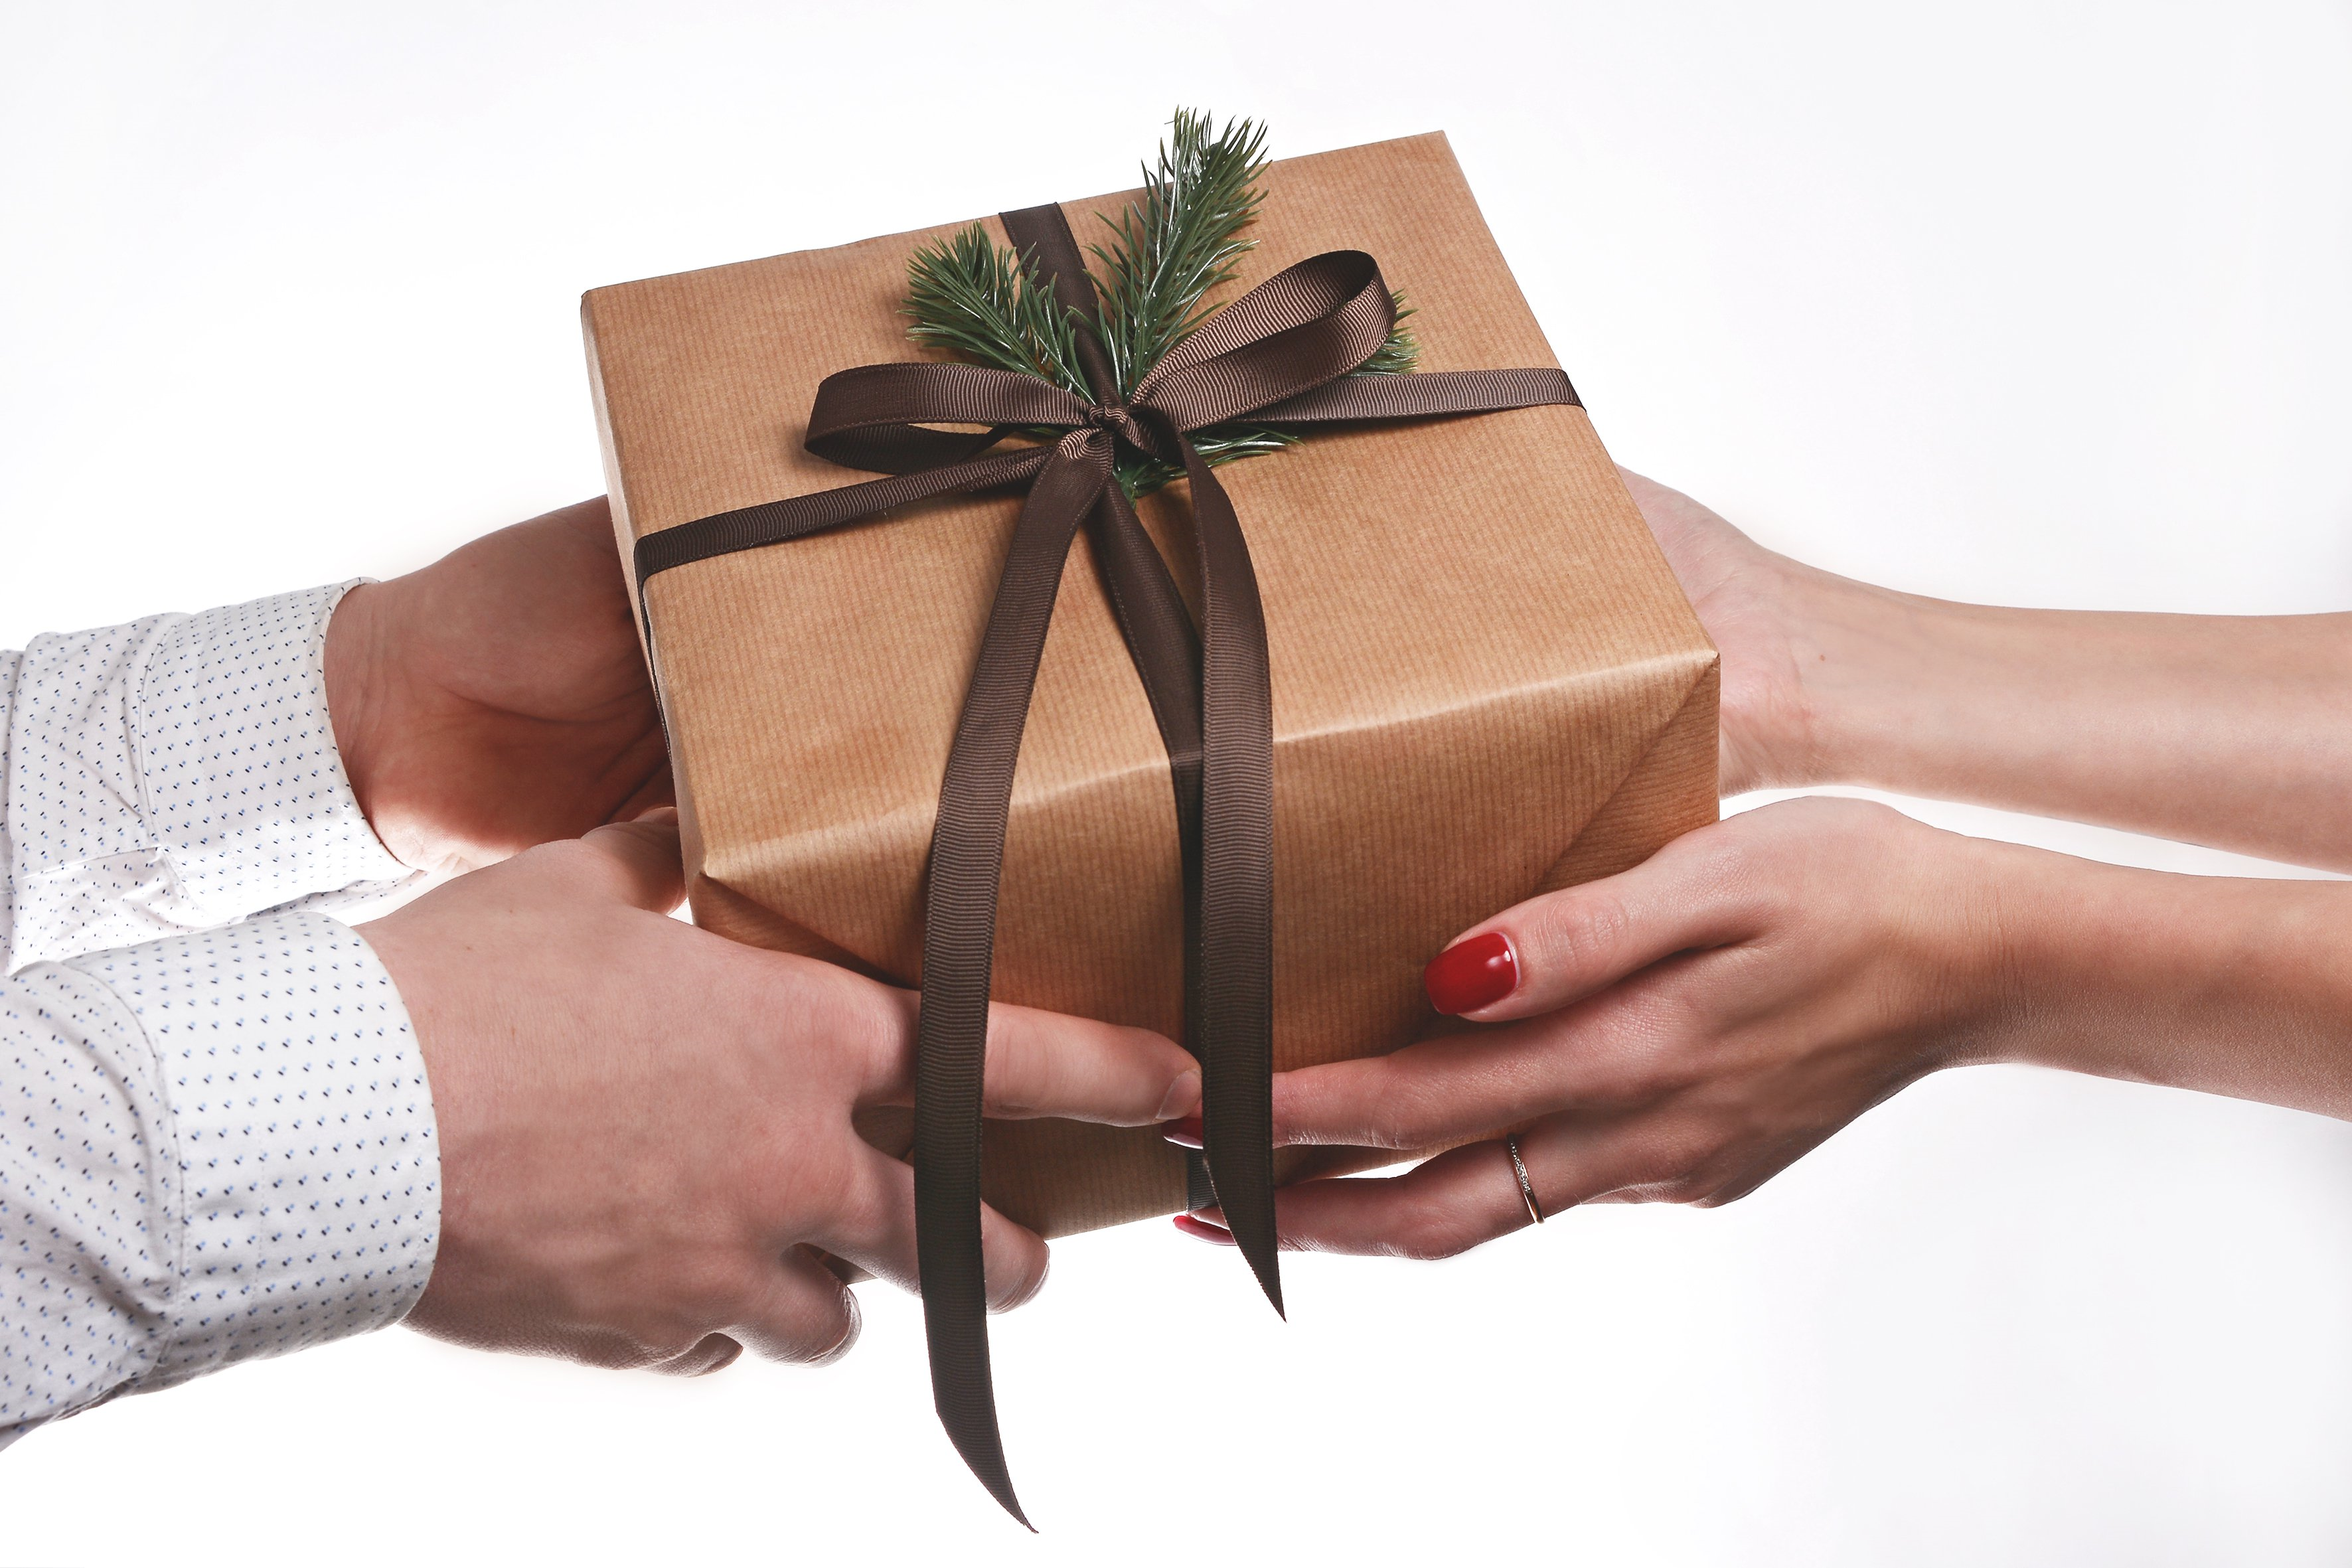 Купить ручной подарок. Подарок. Дарение подарков. Подарок в руках. Деловые подарки.